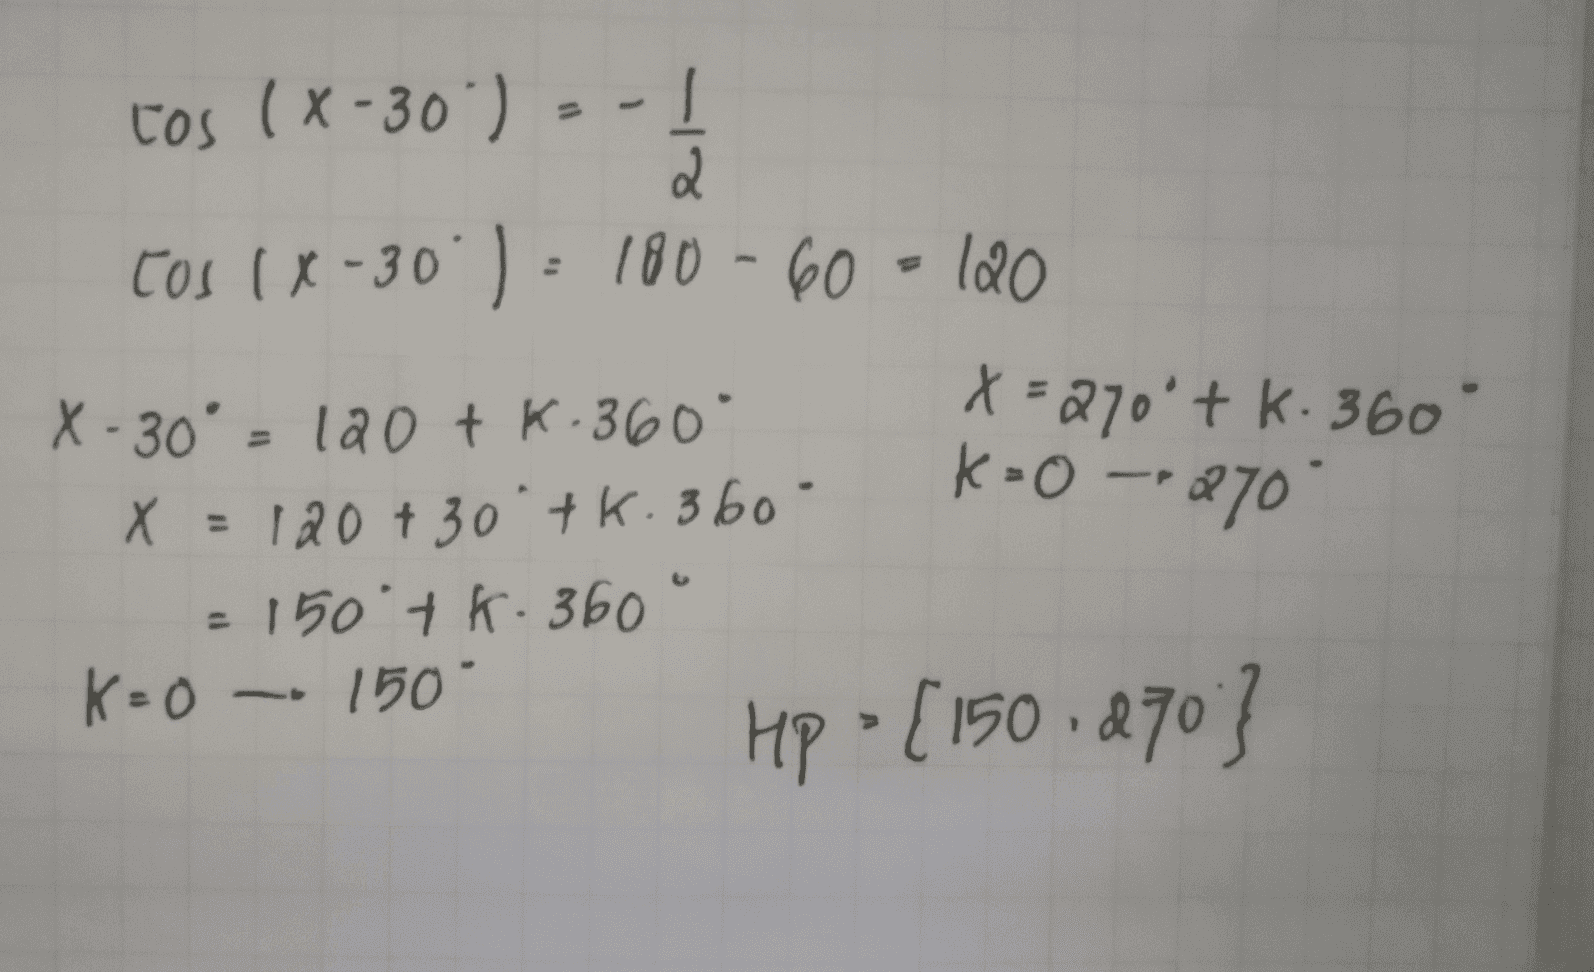 tos (x-30 ) = -1 2 tos (x-30 )= 180-60=120 X-30° = 120 tk.360° x=270'tk. 360° X = 120 + 30 tk. 360 X . = 150° + K - 360° . K=0 150 Hp • [150 270 } K-O -- 270 = 